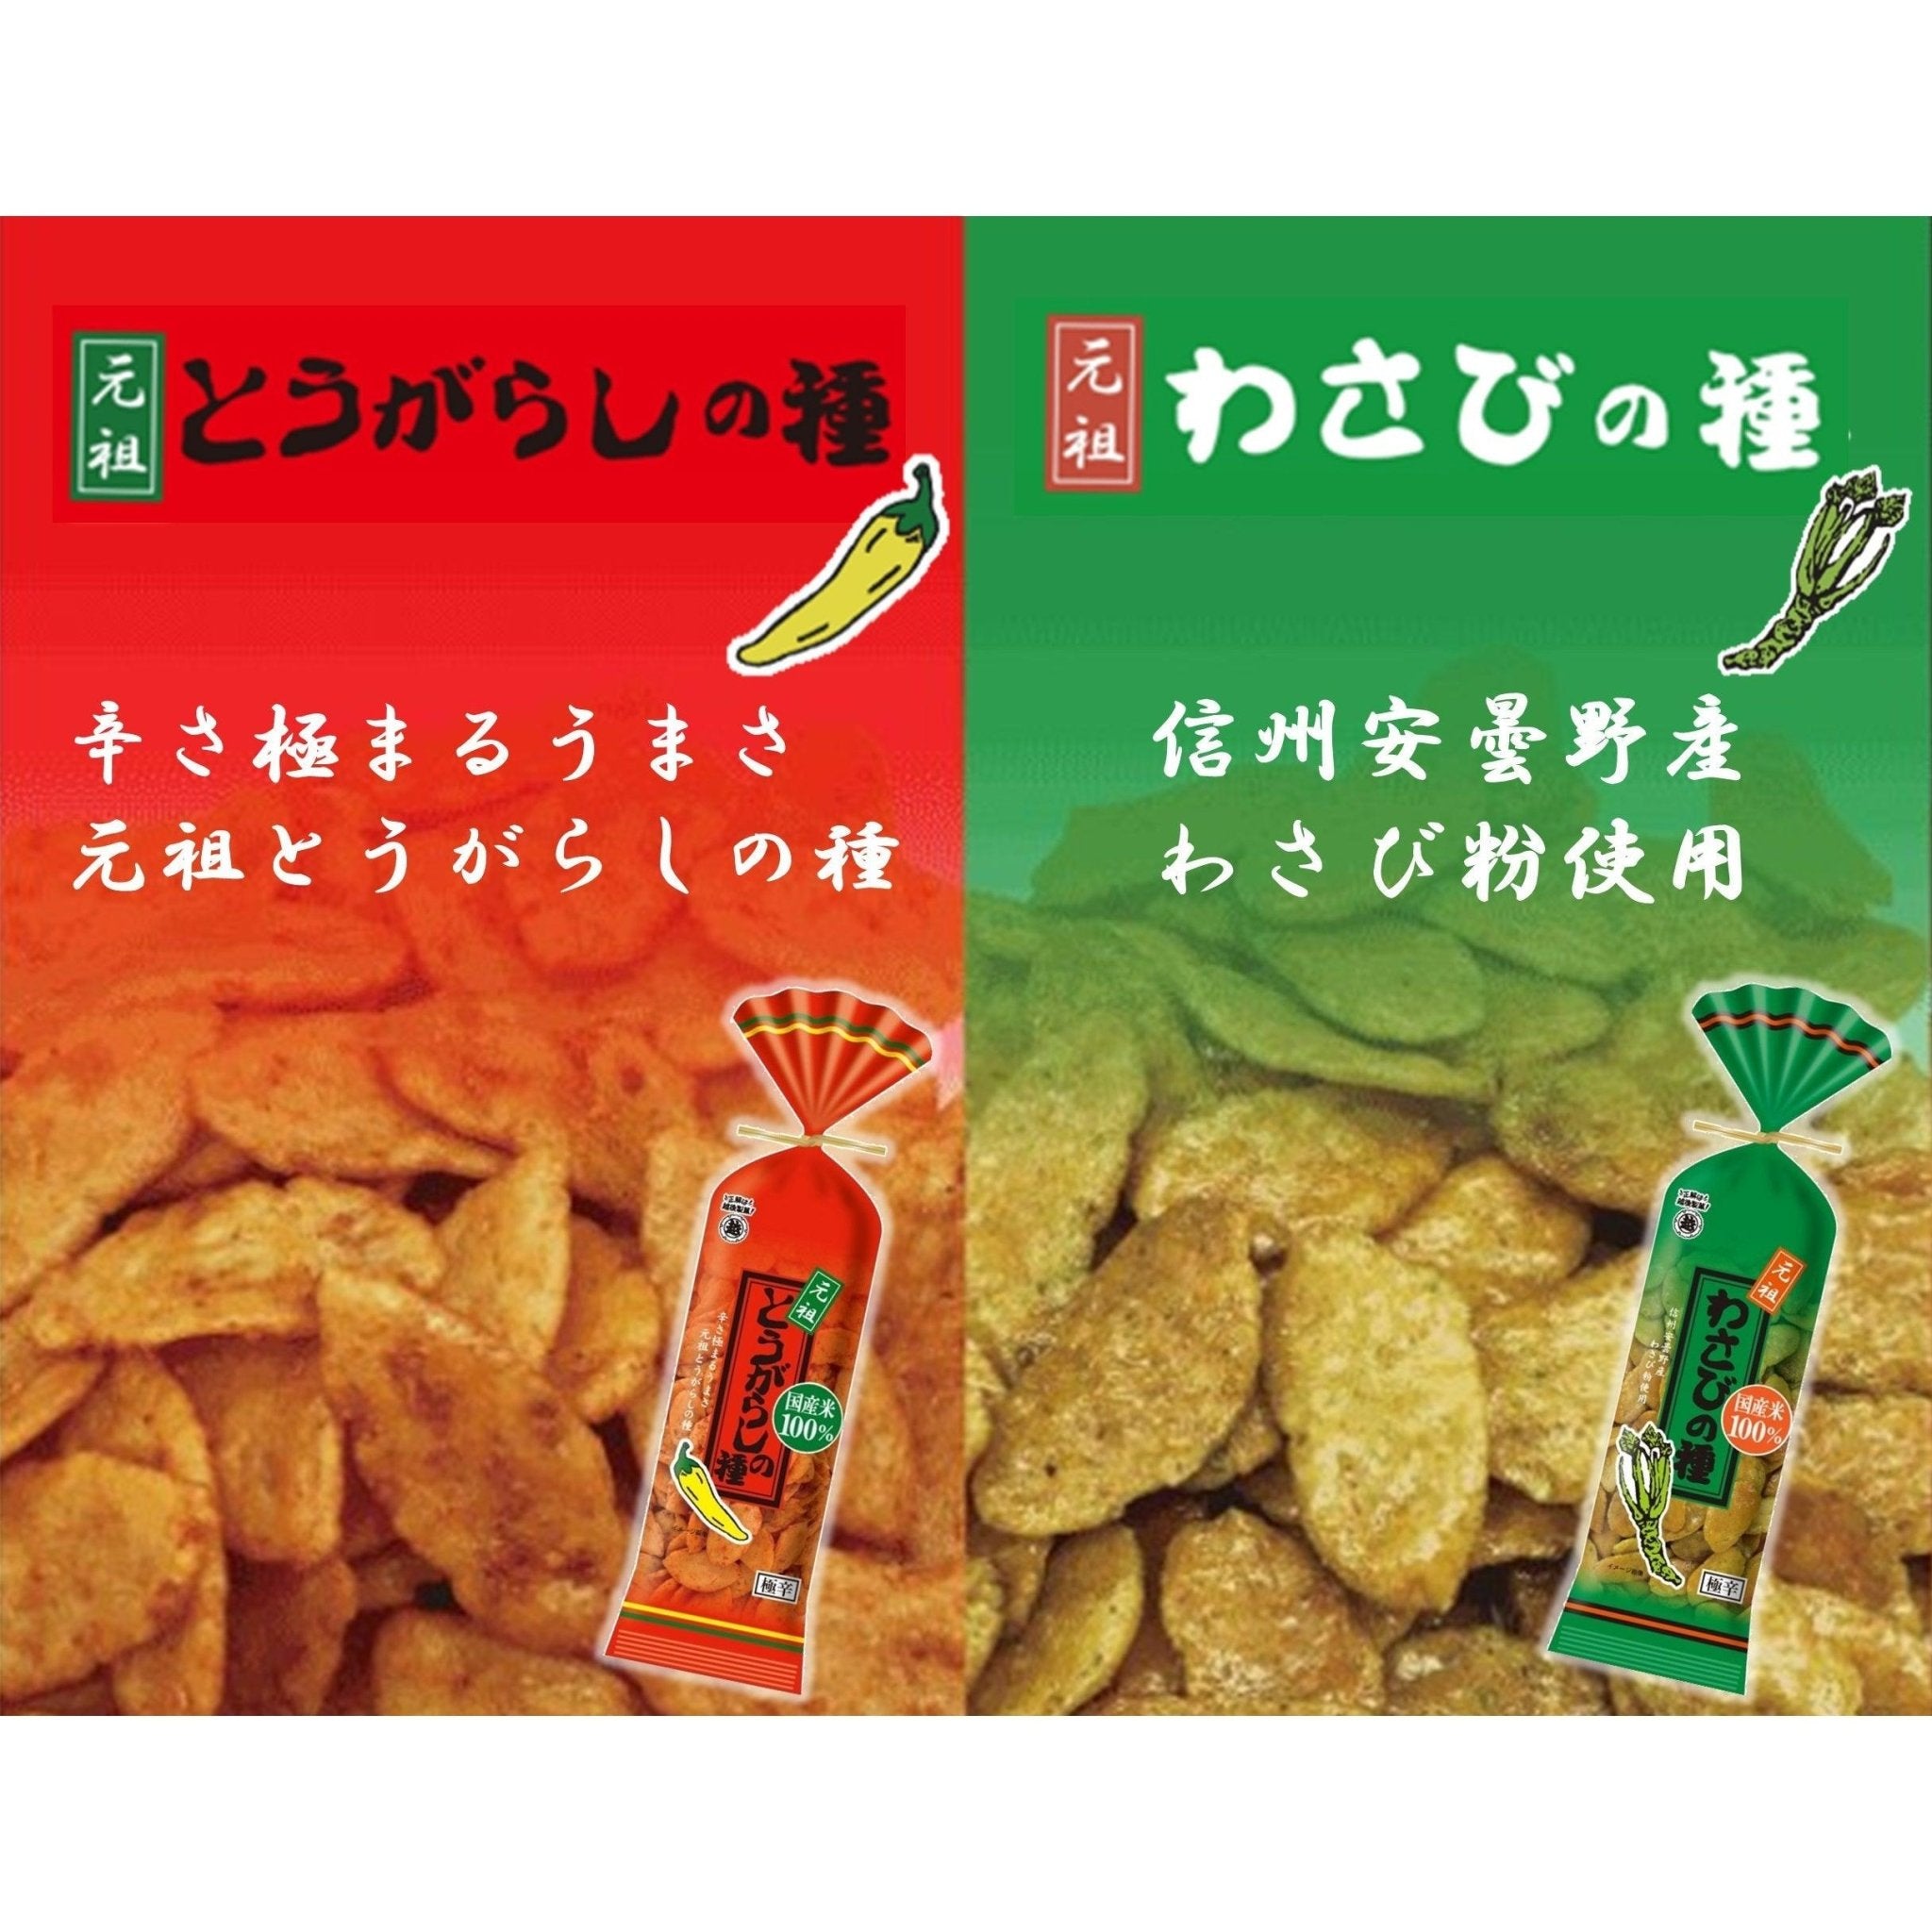 Echigo Seika Wasabi no Tane Wasabi Flavor Rice Crackers 80g (Pack of 5) - YOYO JAPAN